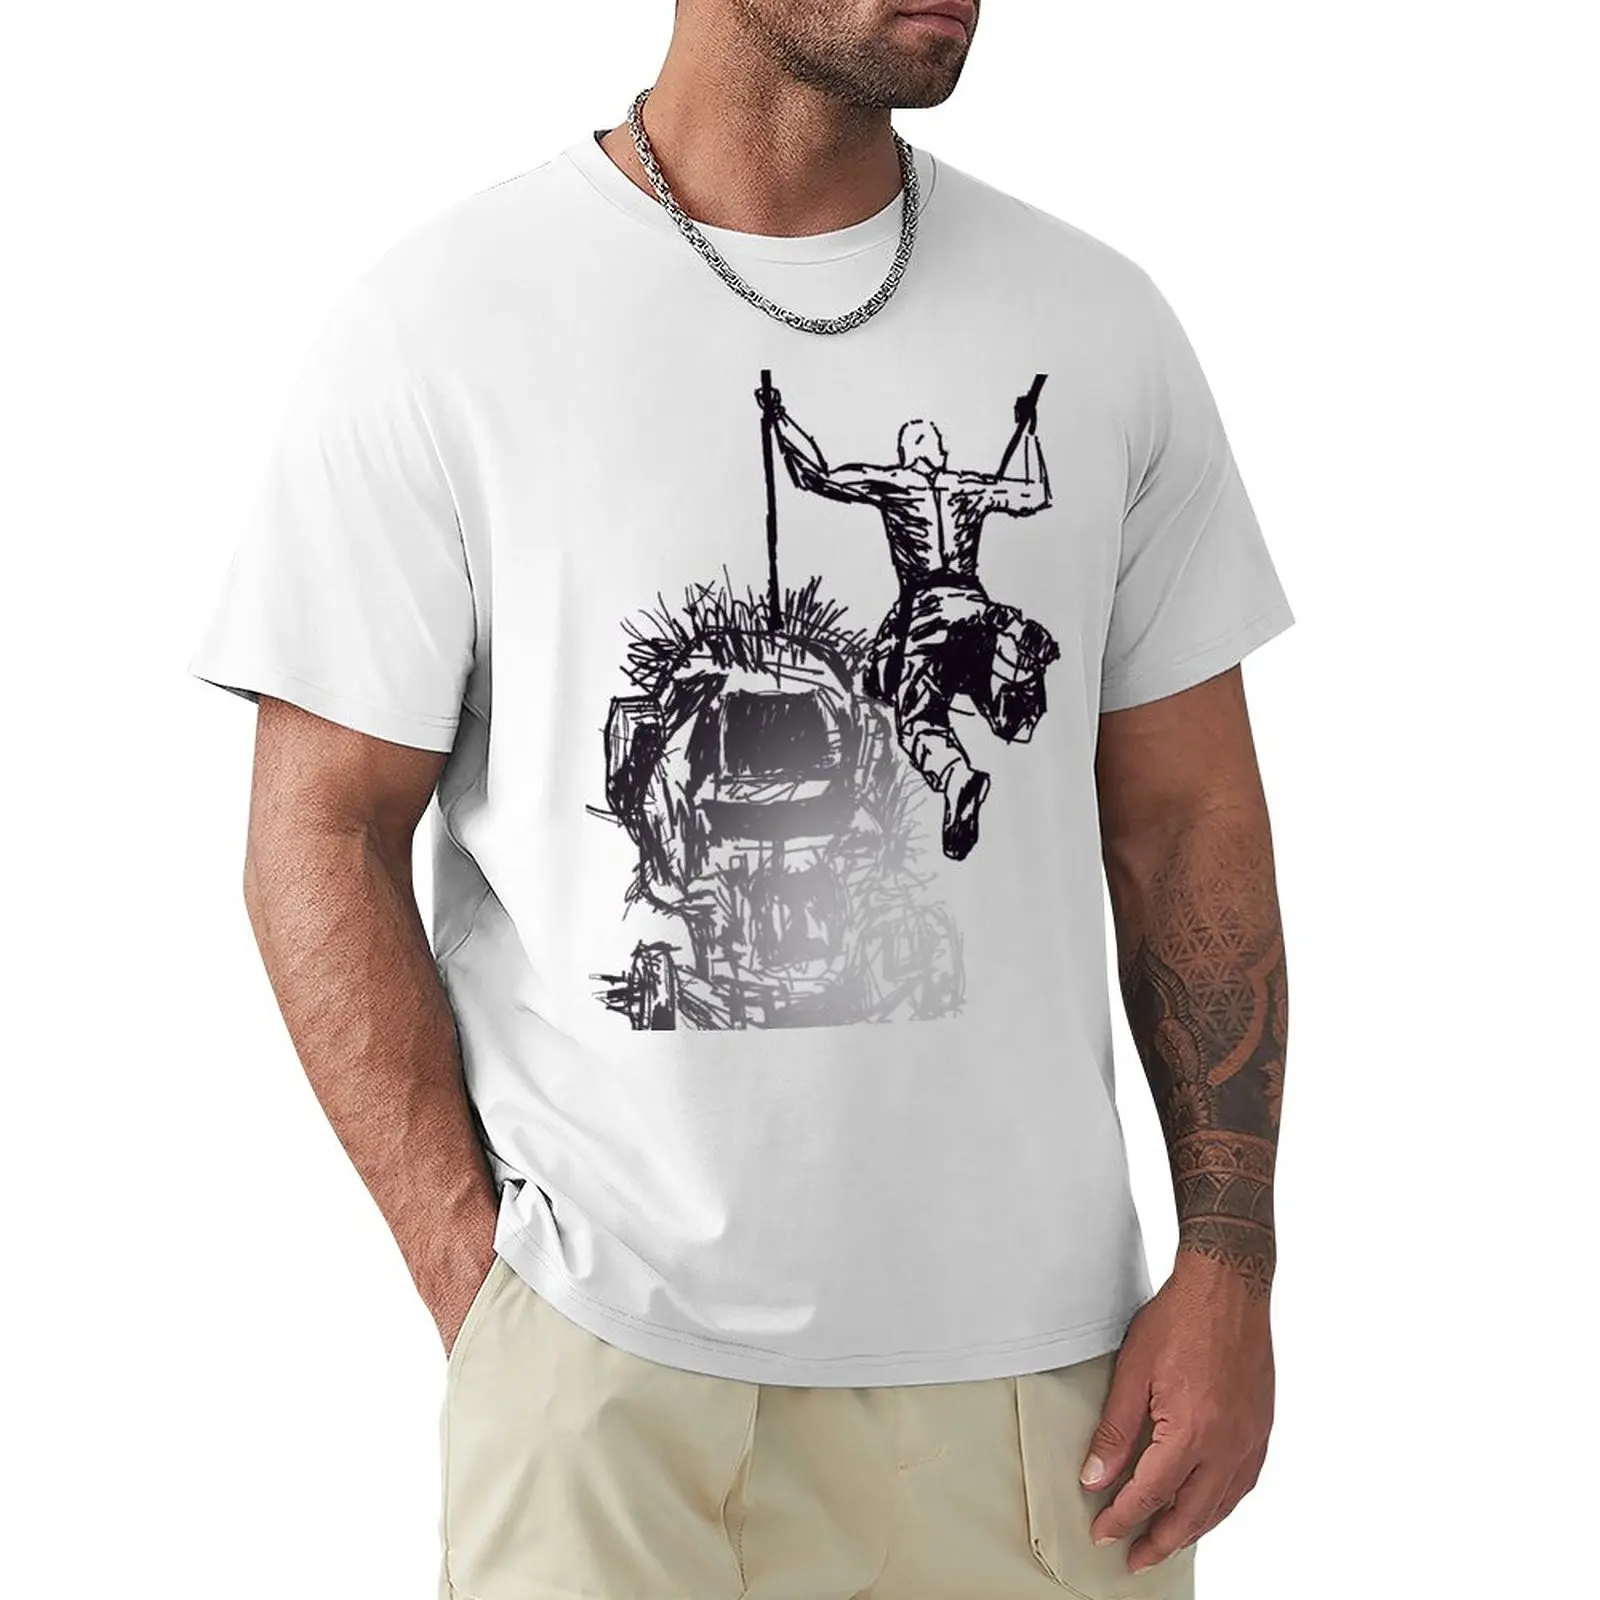 

Jump - Sketch T-Shirt tees graphics cute tops mens champion t shirts